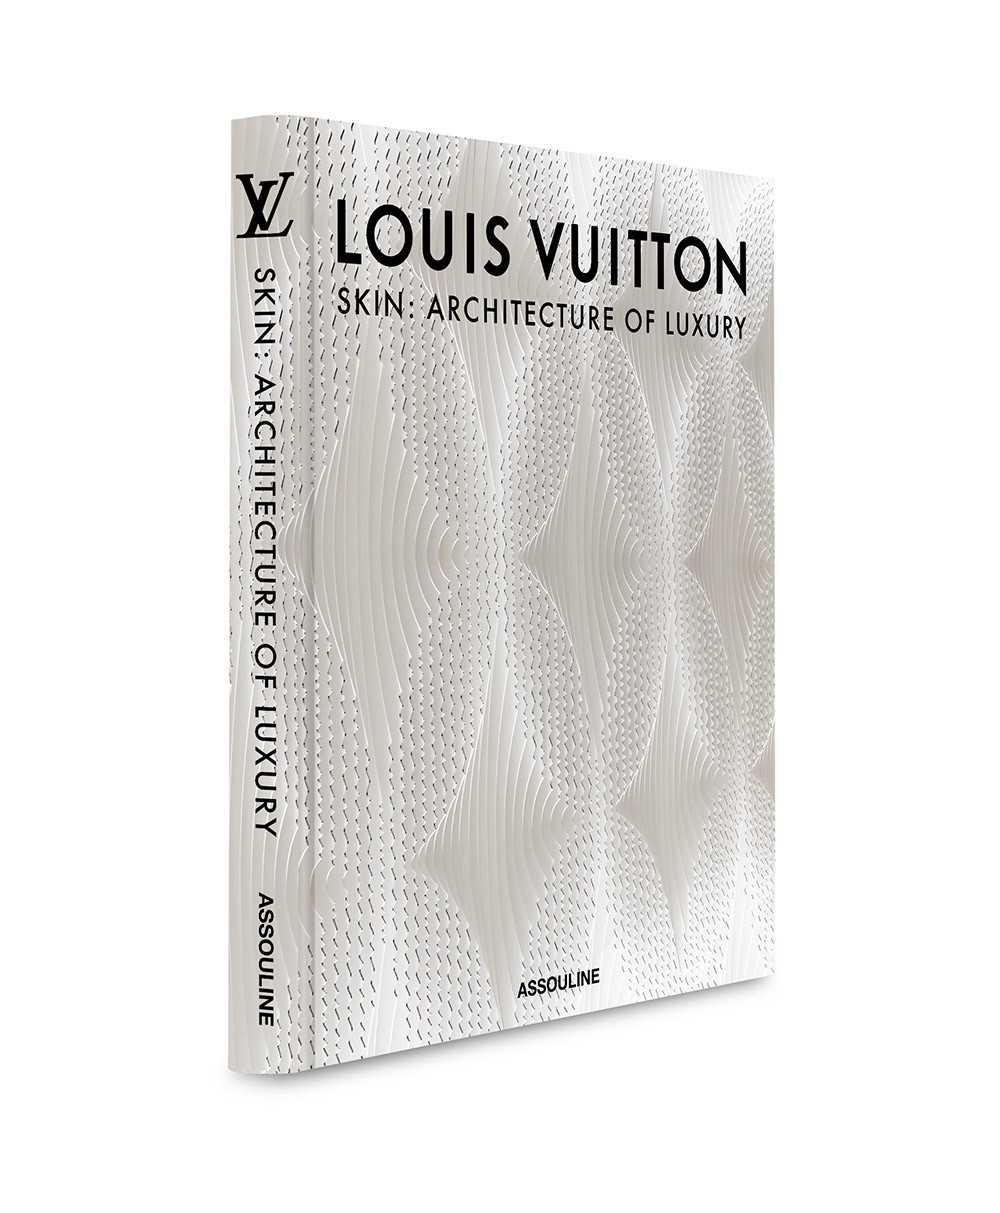 Cover in der New York Edition des Bildband Louis Vuitton aus der Skin Kollektion von Assouline im RAUM concept store